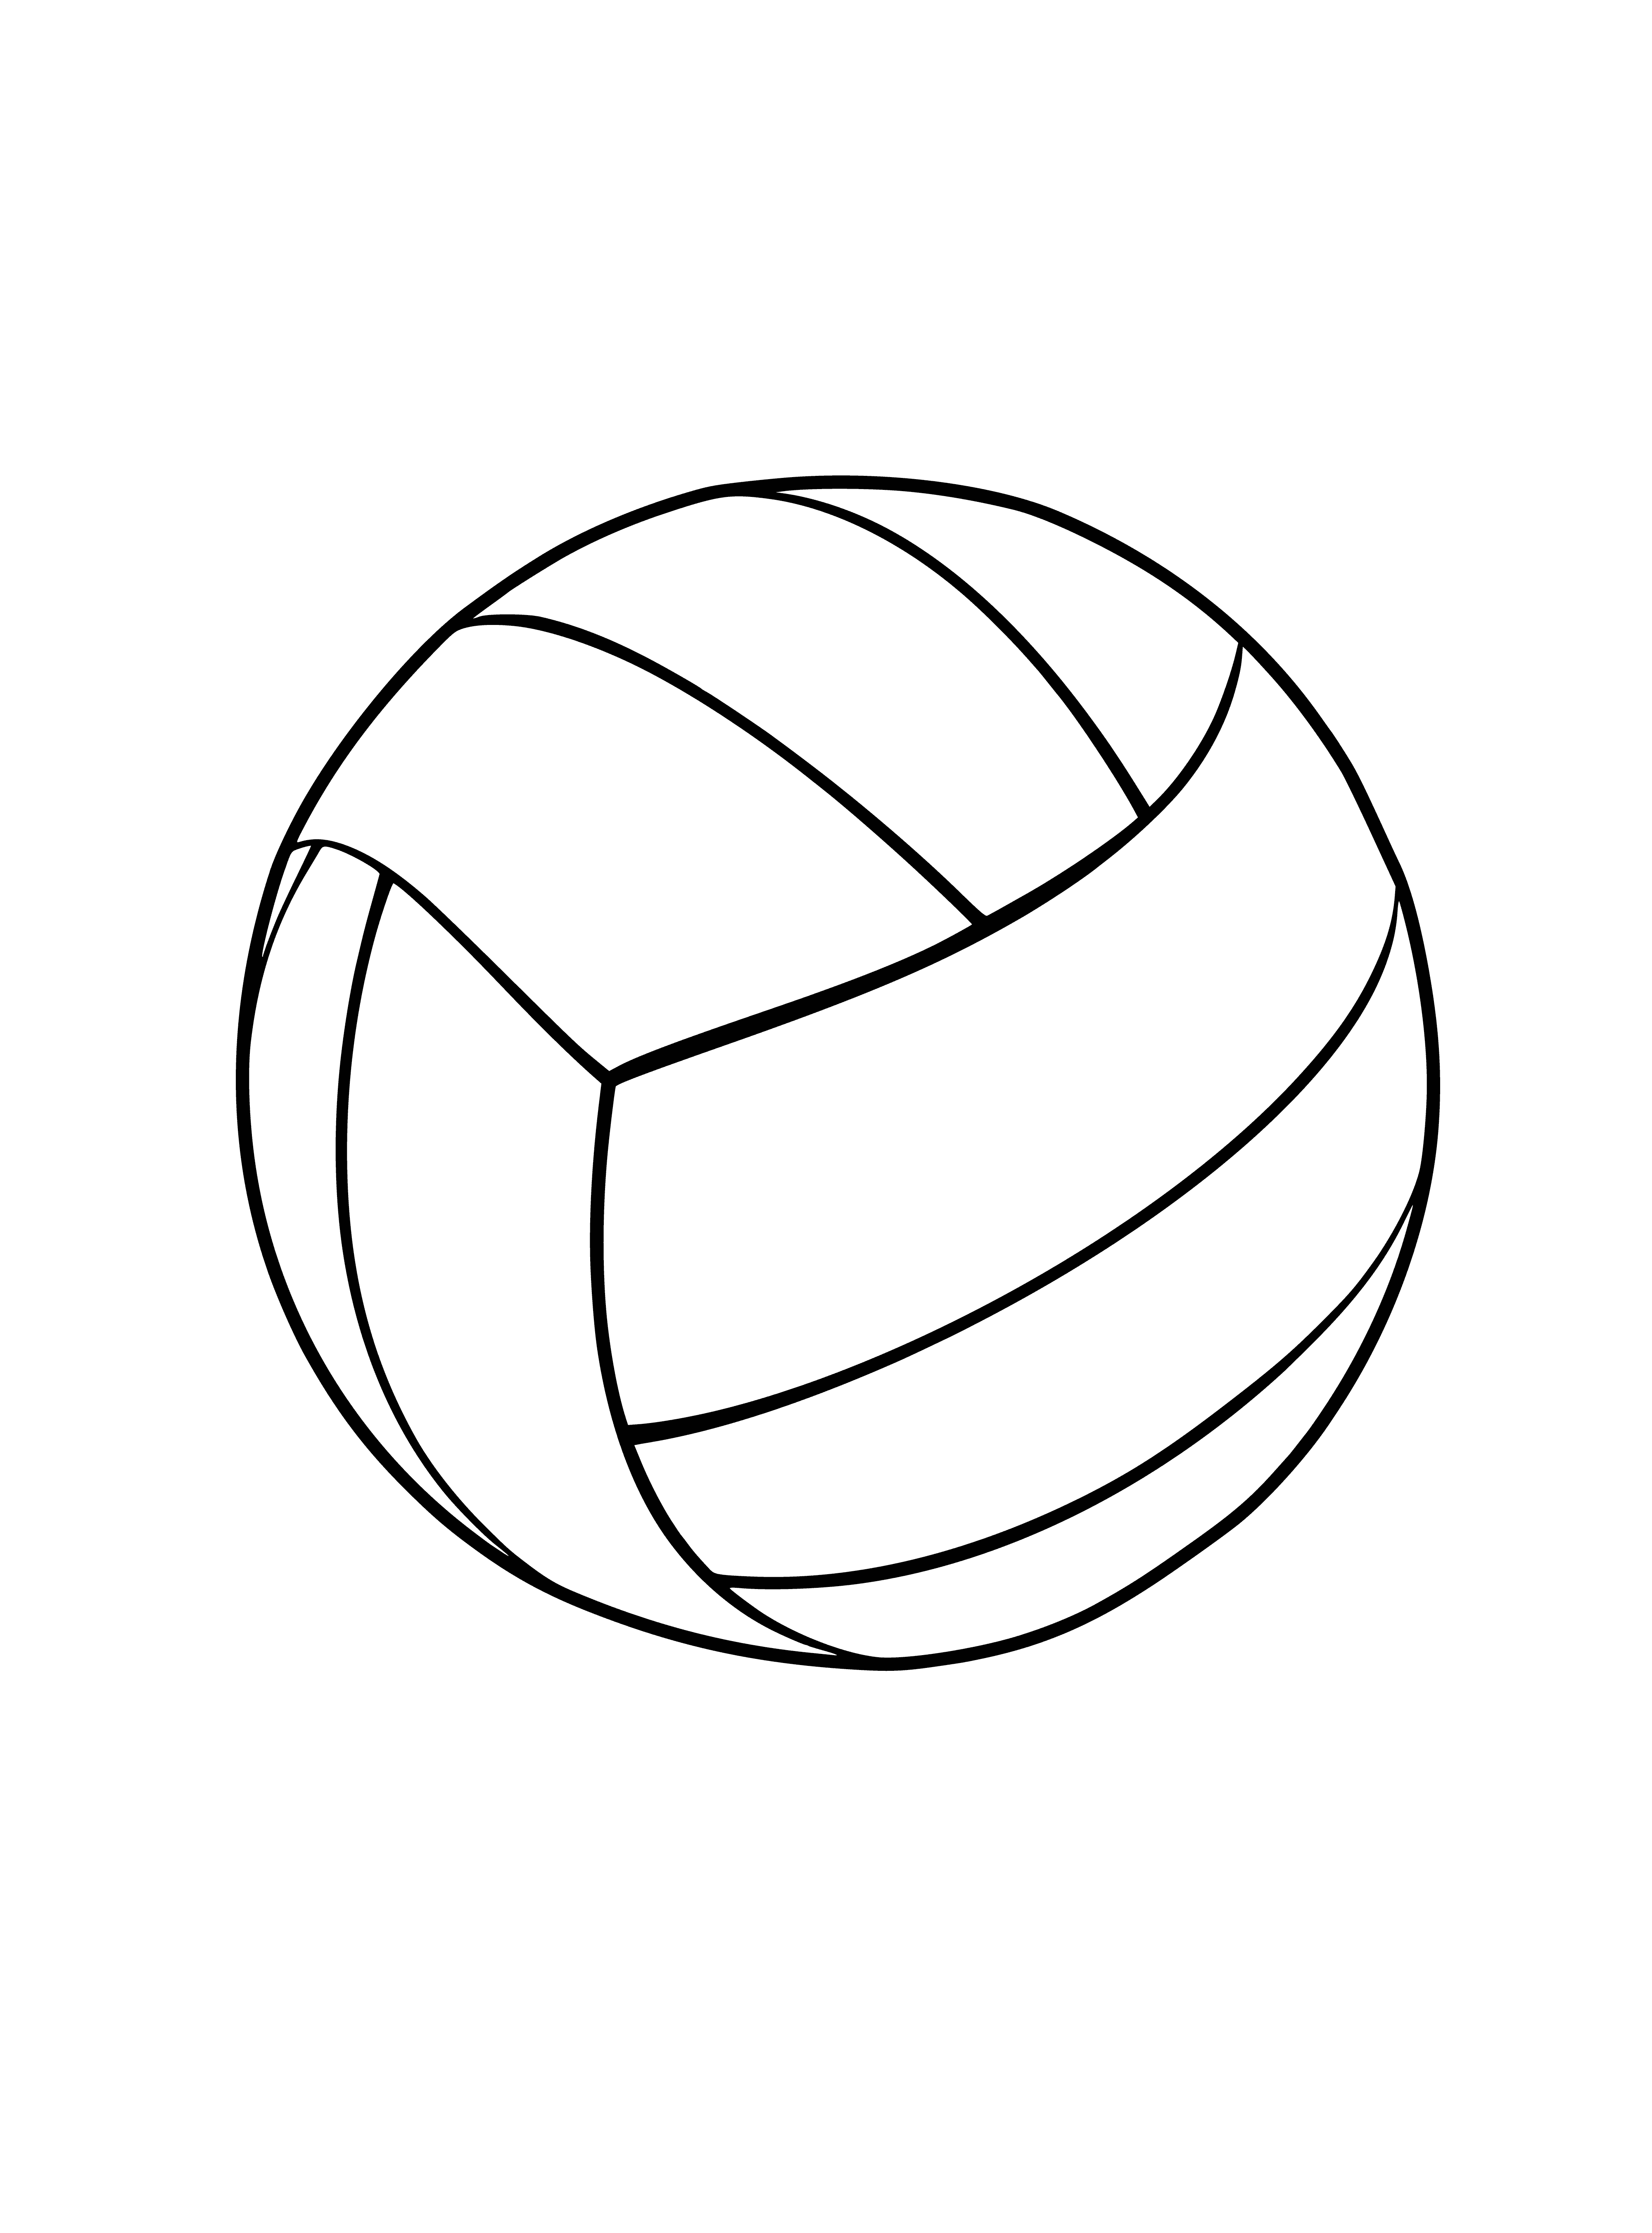 Мячик раскраска для детей